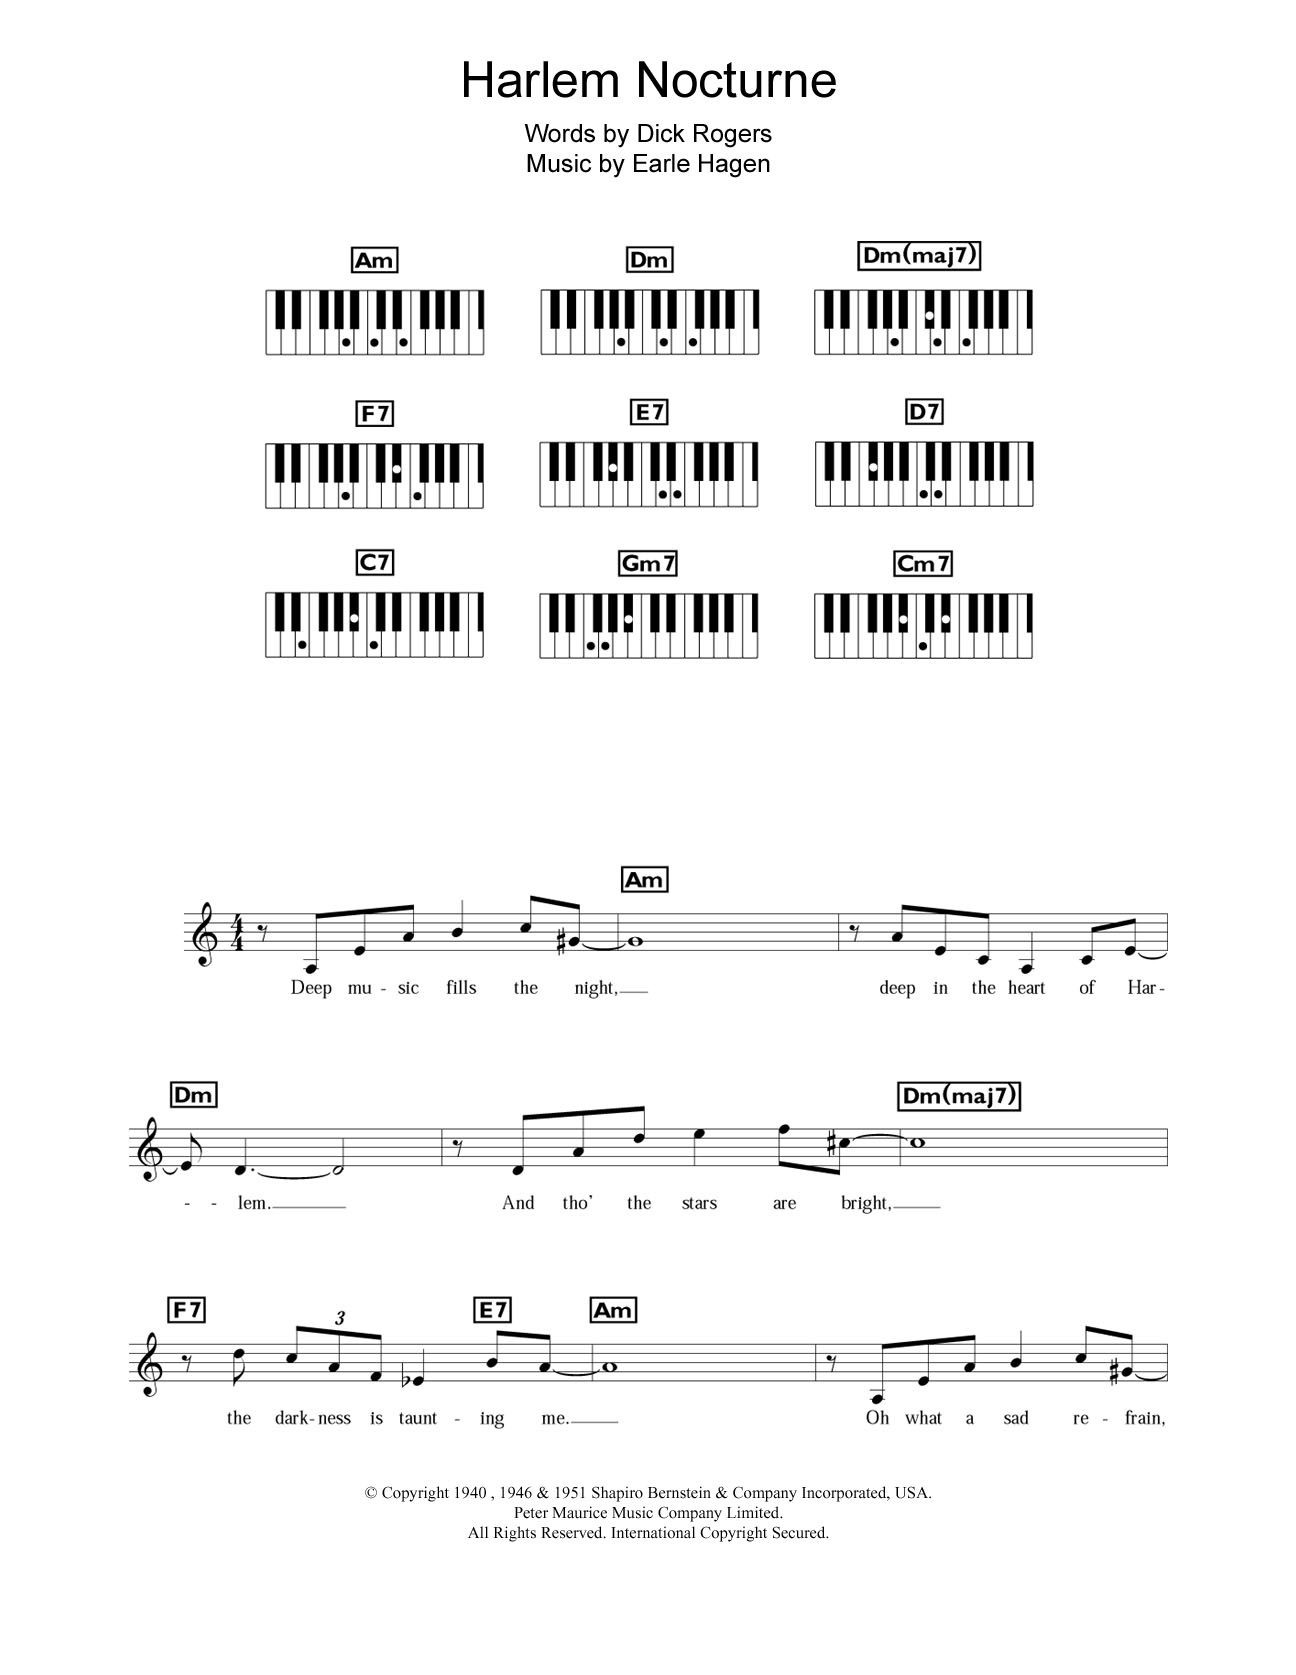 Duke Ellington Harlem Nocturne Sheet Music Notes & Chords for Keyboard - Download or Print PDF